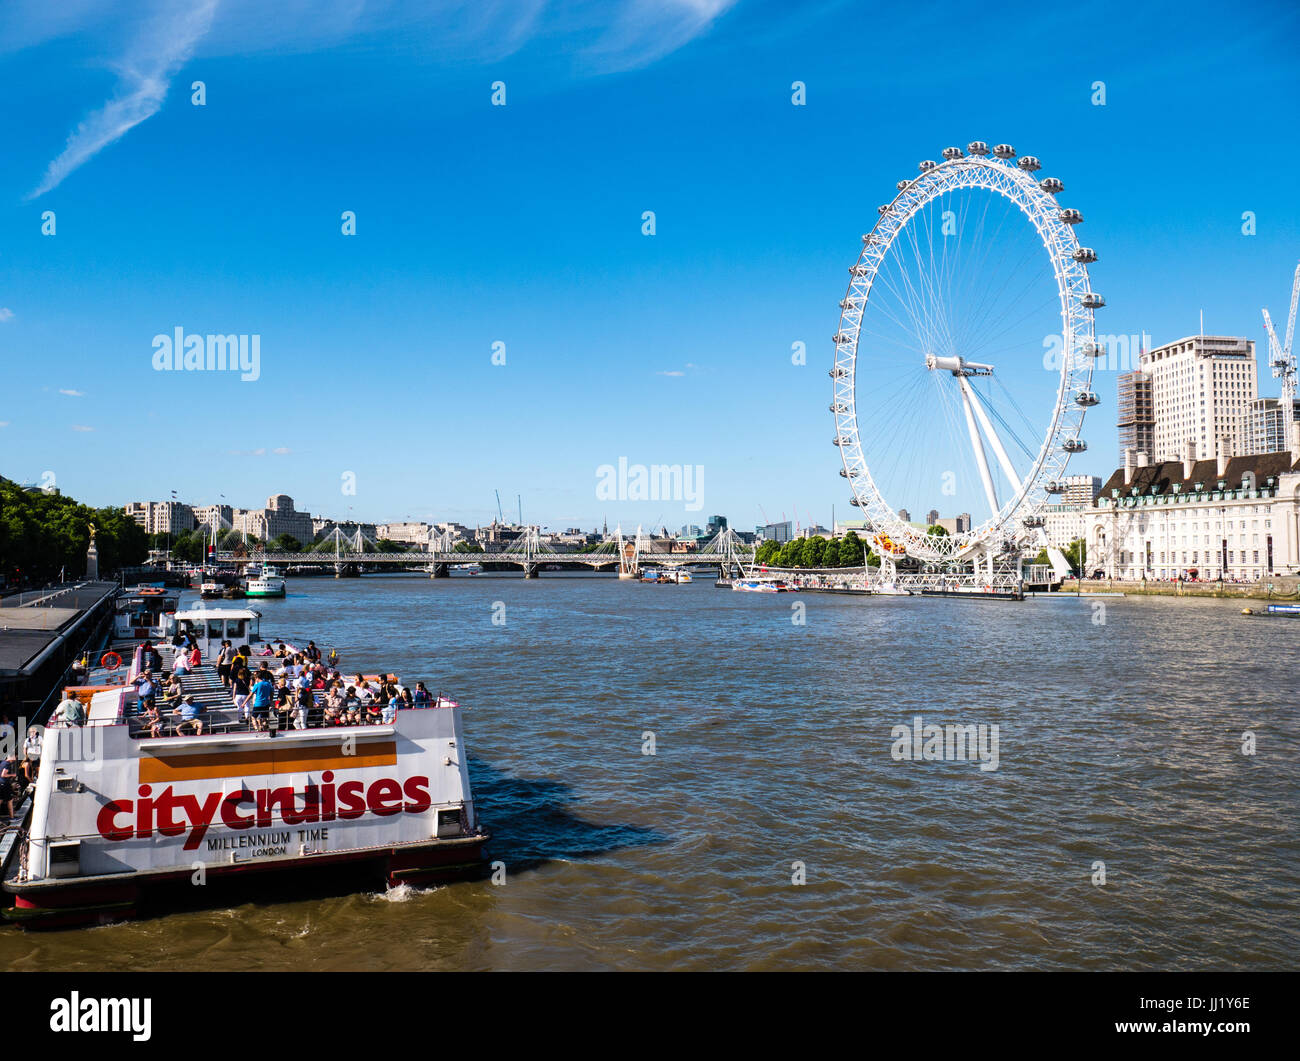 City Cruises, Themse, Westminster, London Eye, London, England, UK, GB. Stockfoto